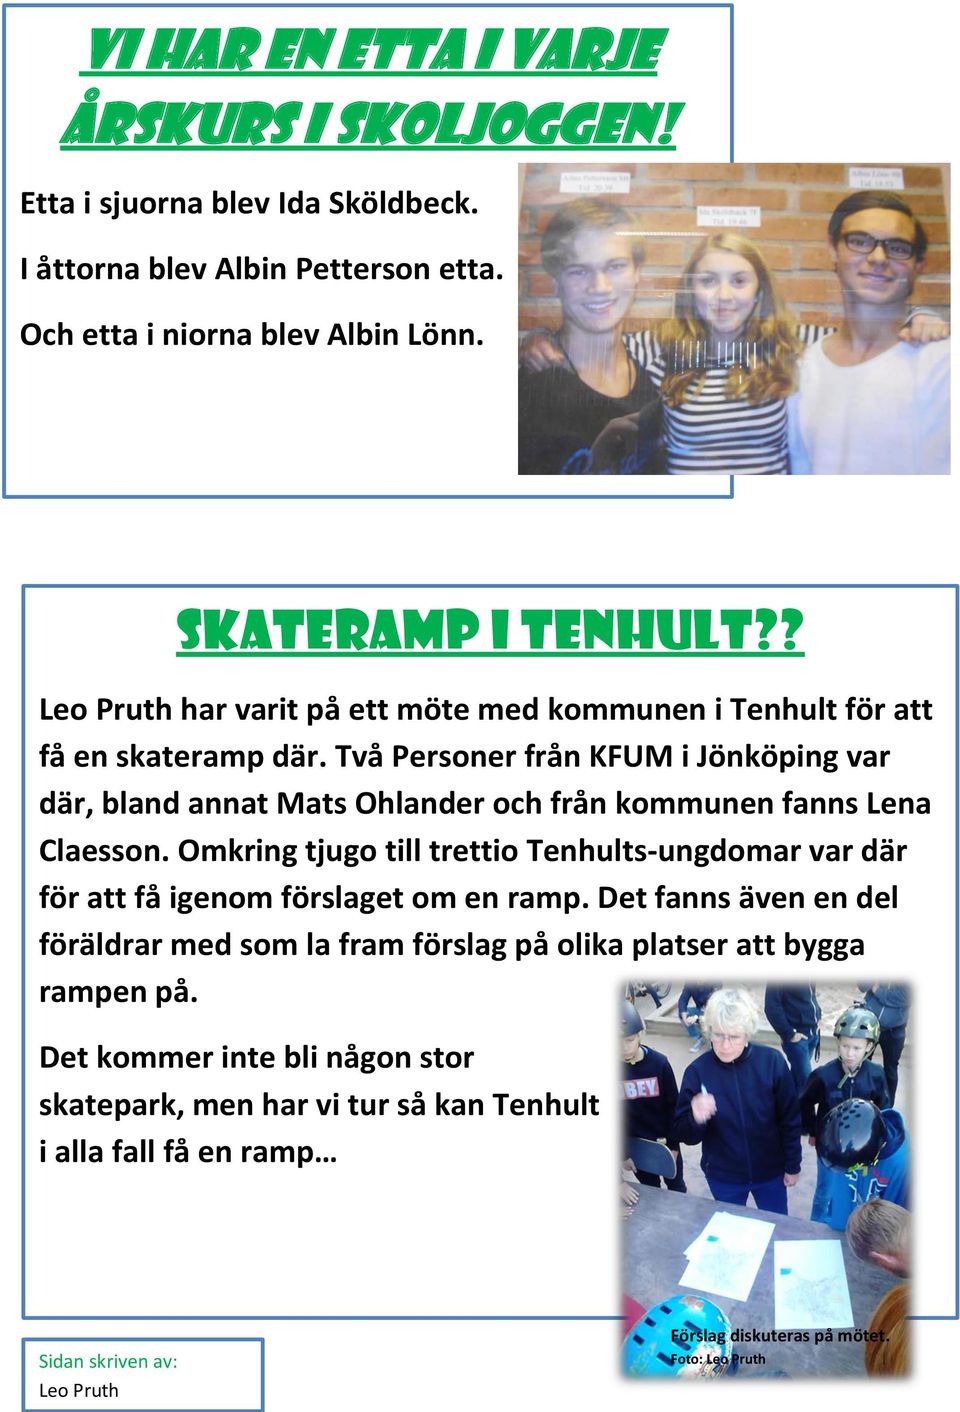 Två Personer från KFUM i Jönköping var där, bland annat Mats Ohlander och från kommunen fanns Lena Claesson.